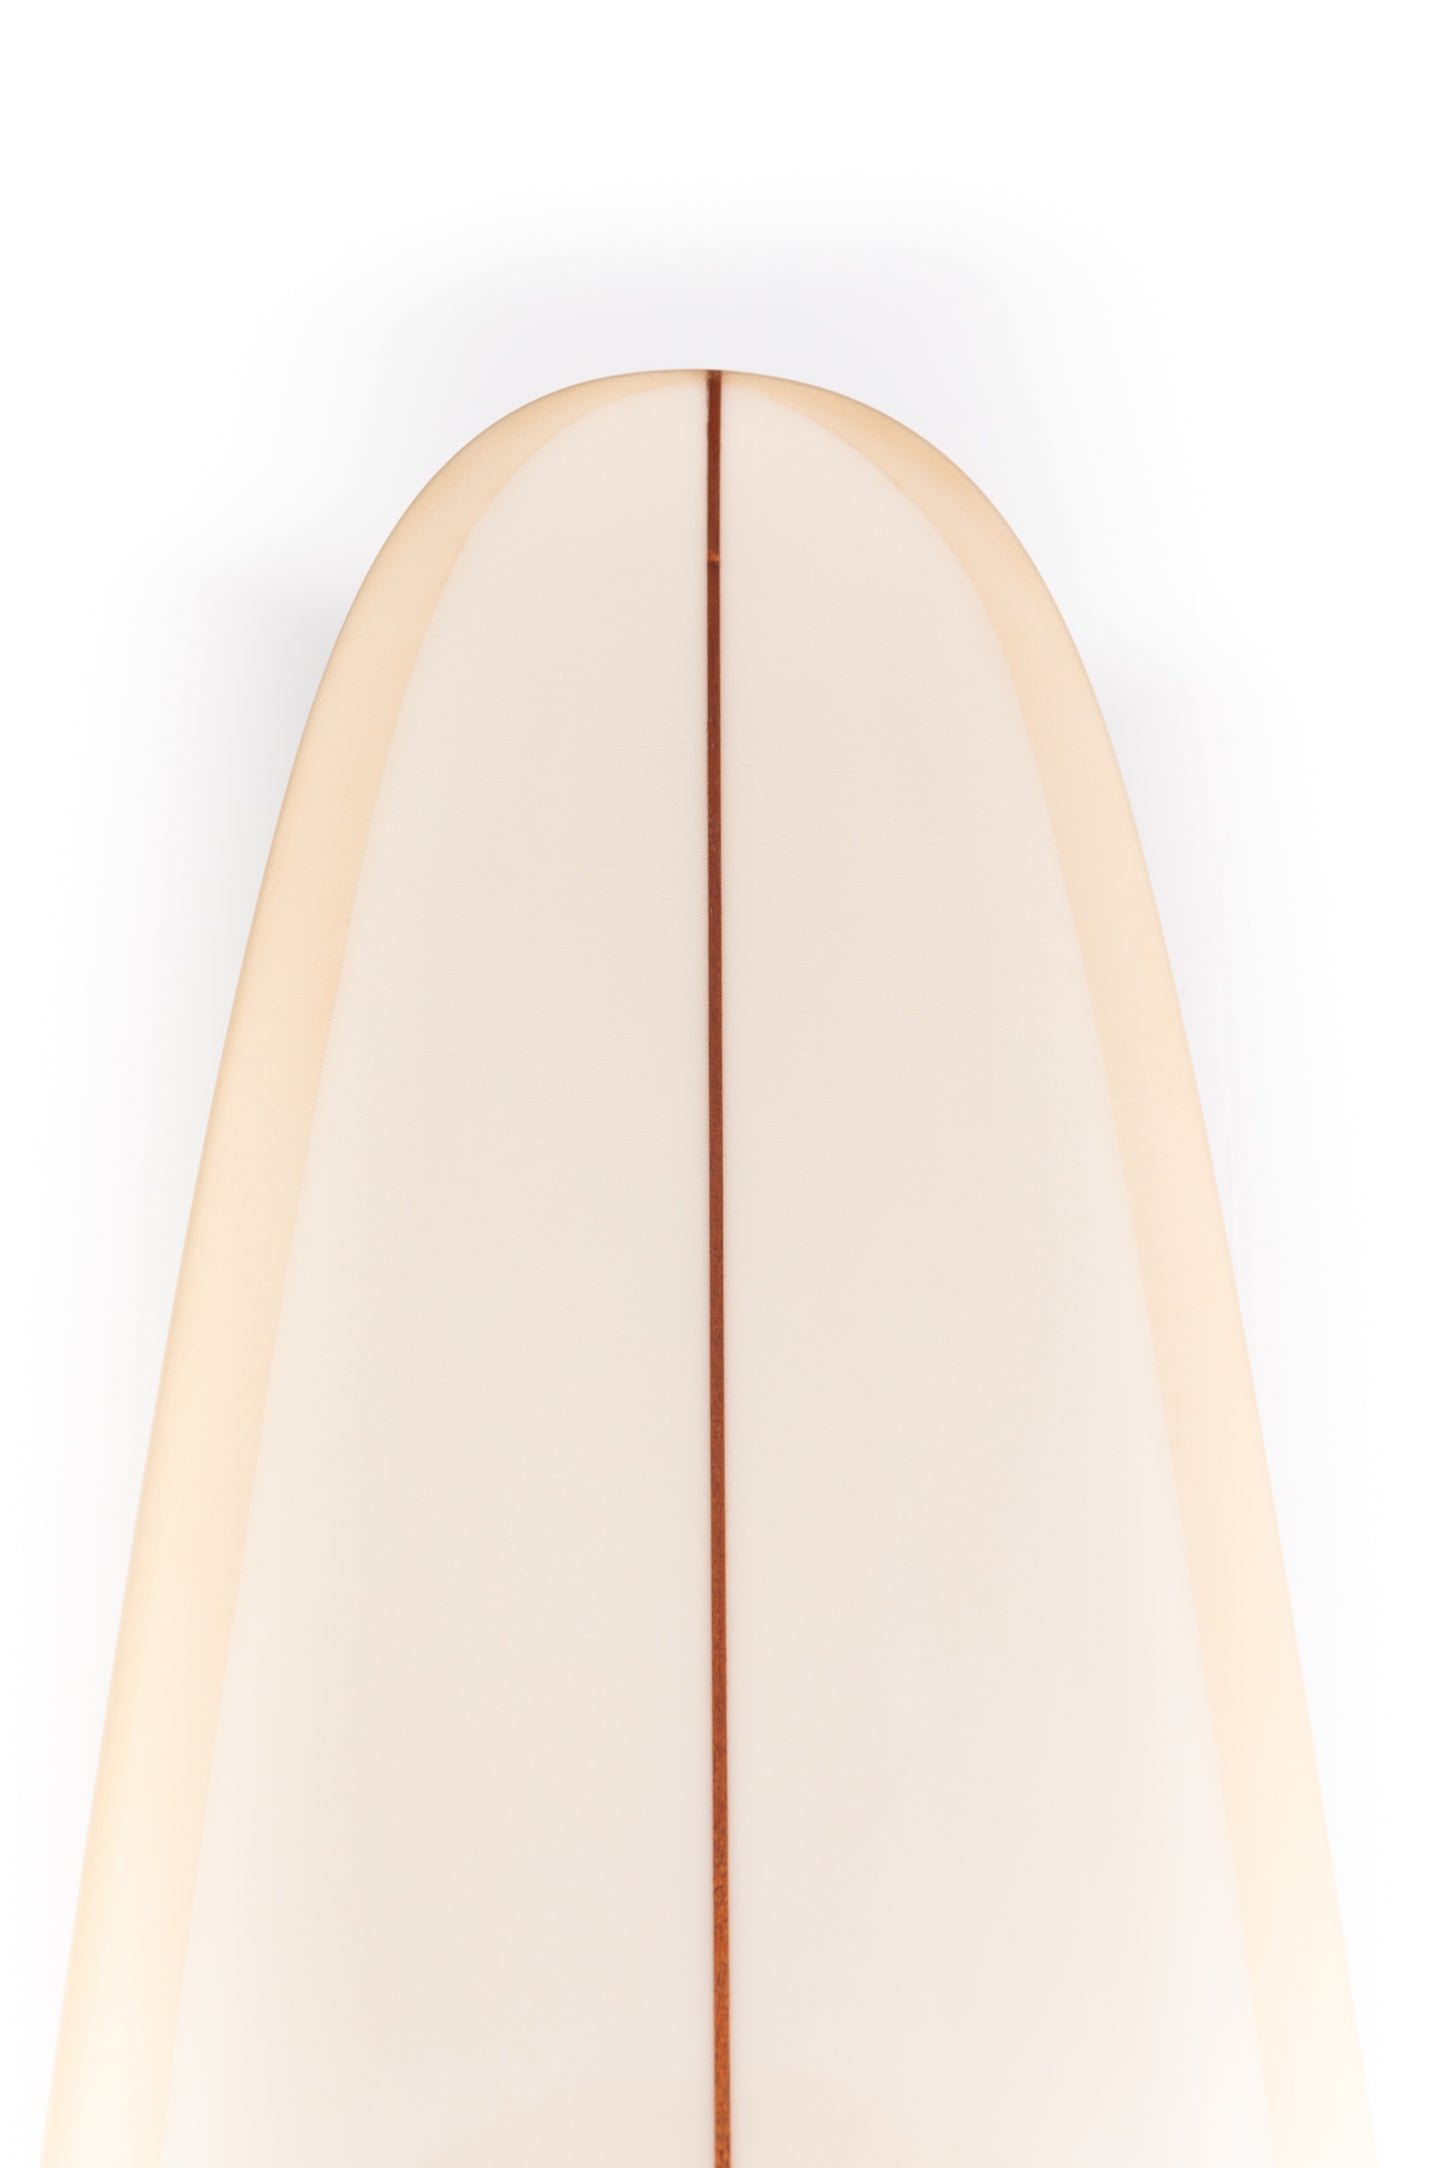 
                  
                    Pukas-Surf-Shop-Thomas-Bexon-Surfboards-Wizl-Thomas-Bexon-9_8_-WIZL98SAND
                  
                